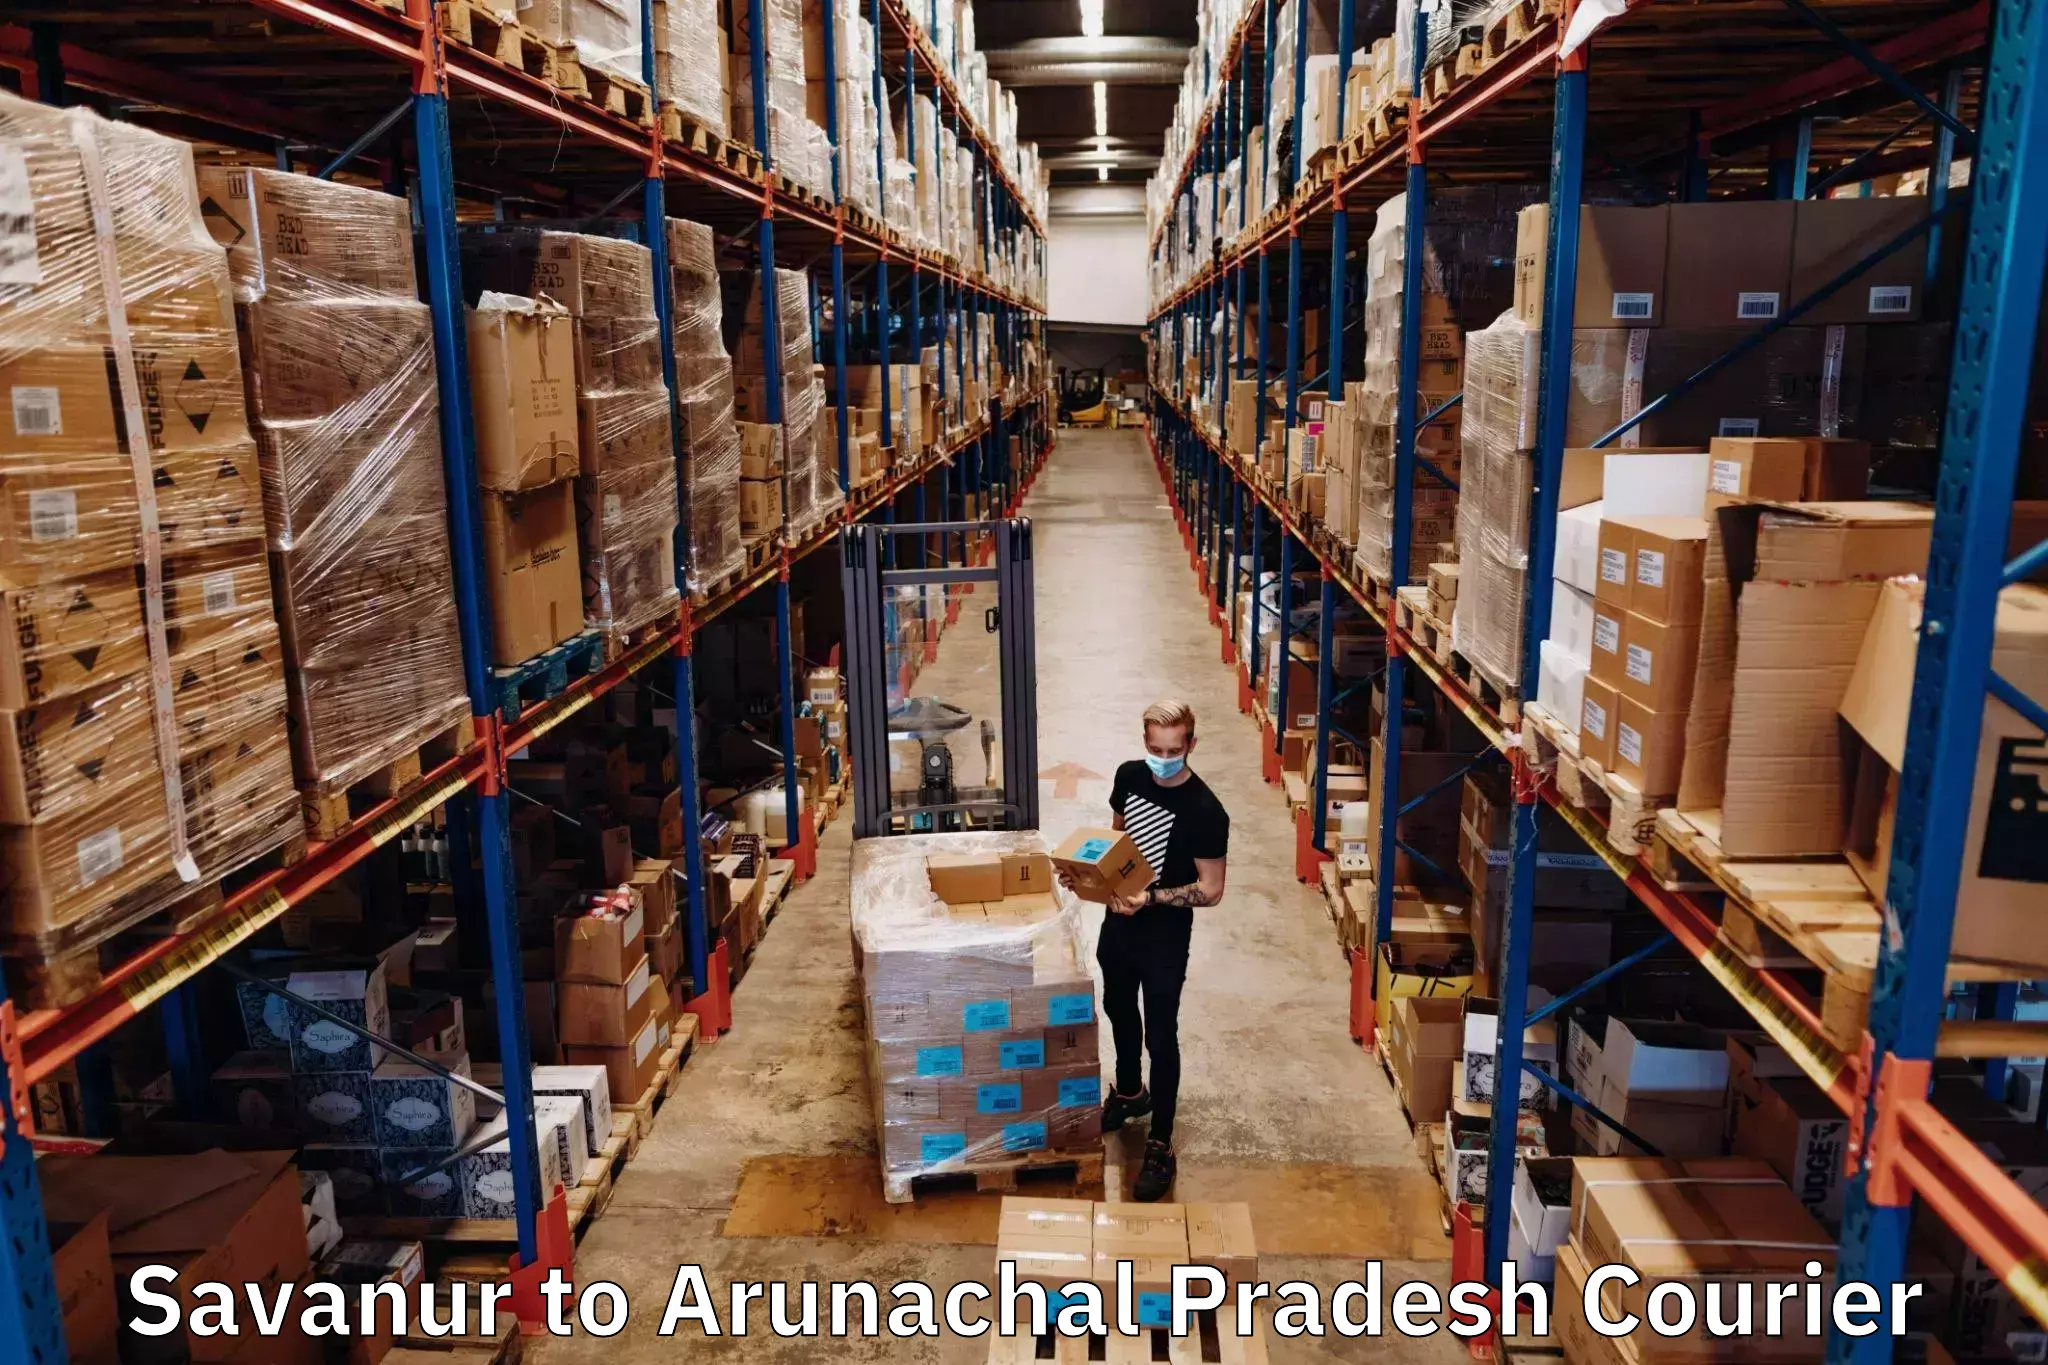 Next-generation courier services Savanur to Arunachal Pradesh